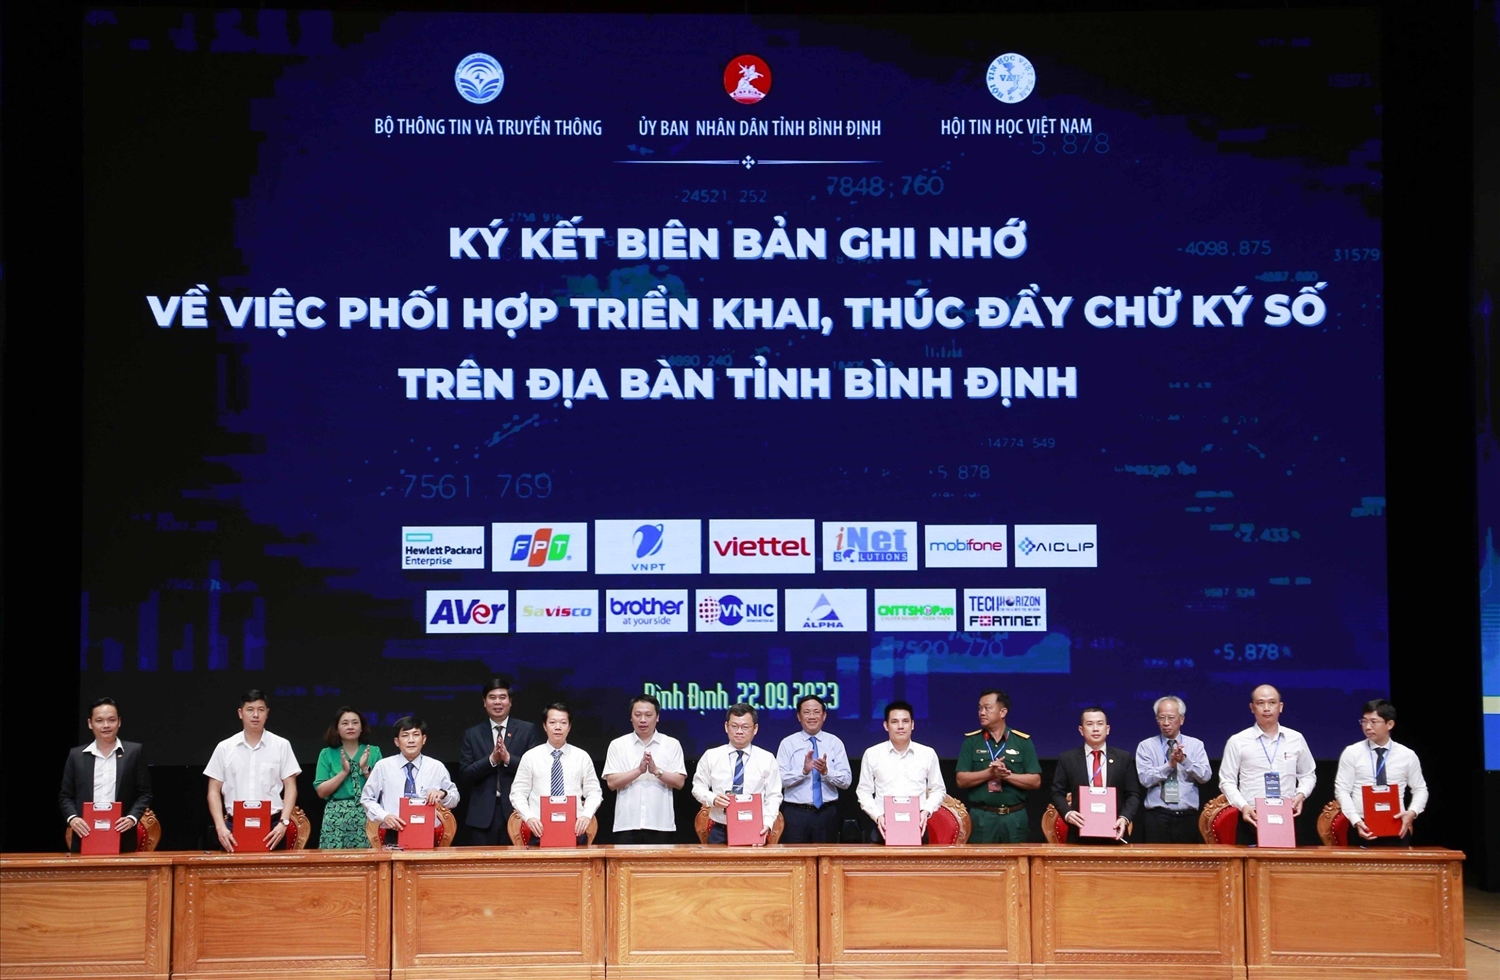 Các đại biểu ký kết Biên bản ghi nhớ về việc phối hợp triển khai, thúc đẩy chữ ký số trên địa bàn tỉnh Bình Định